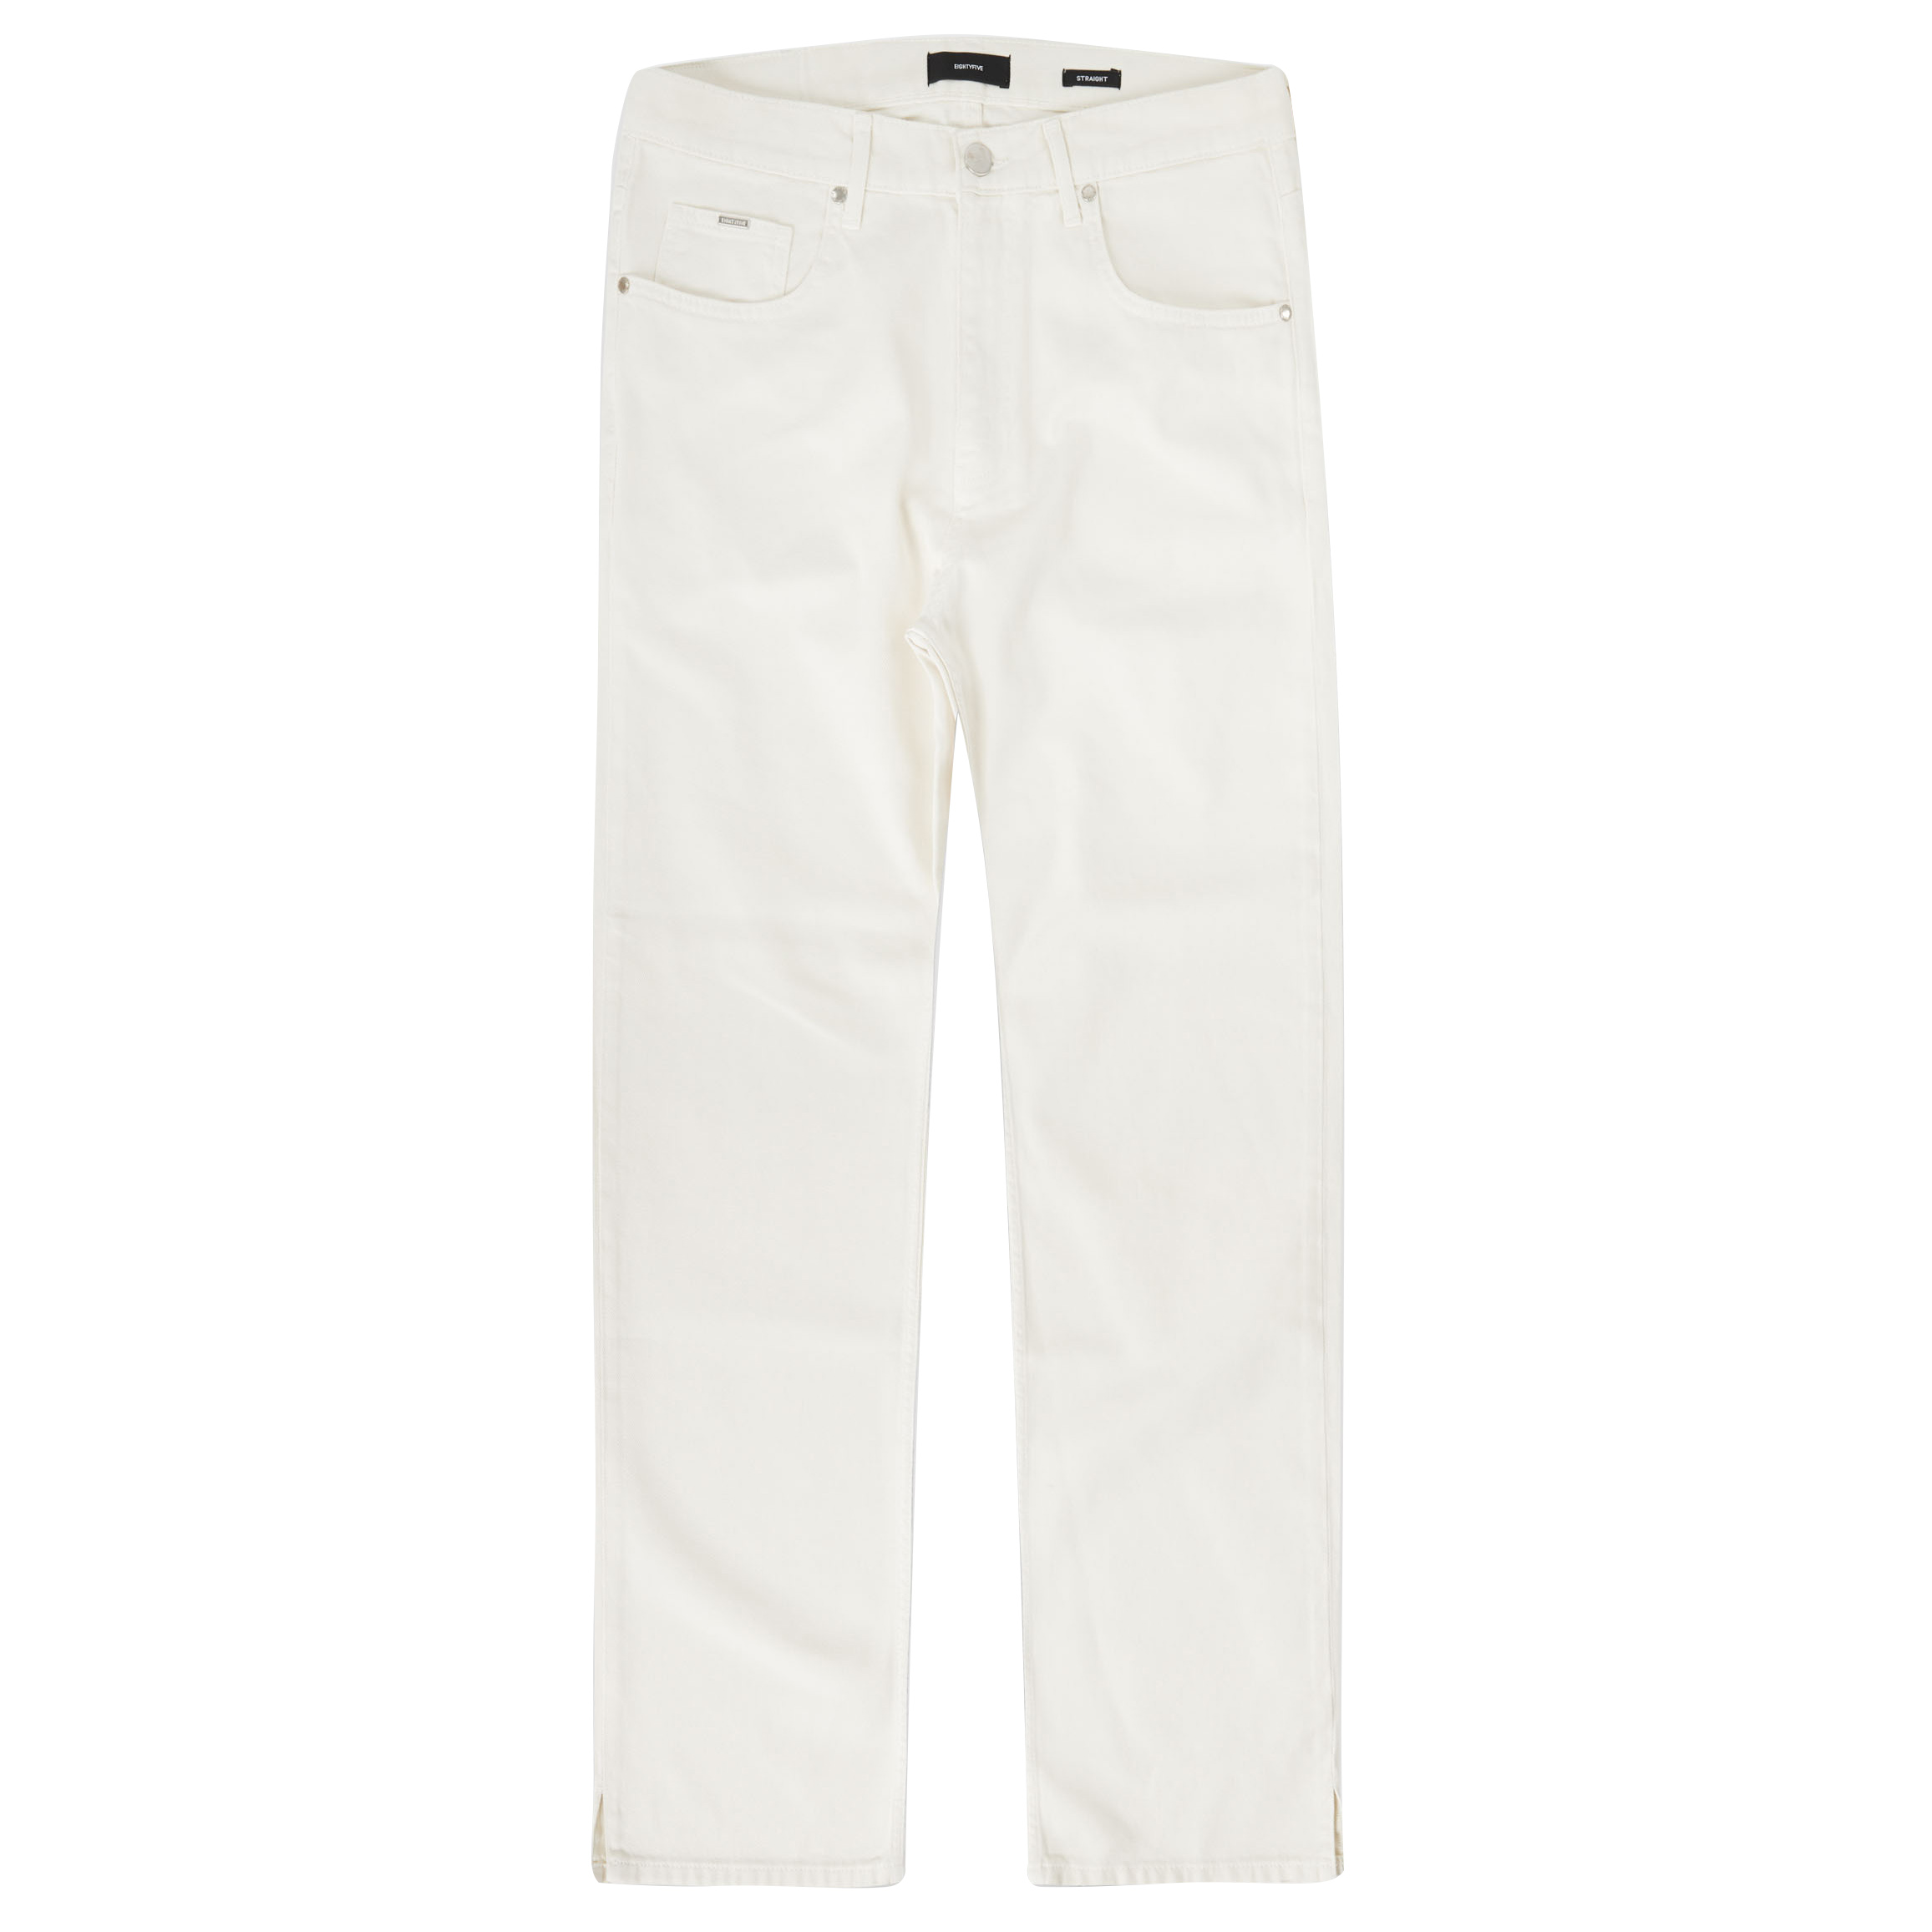 Eightyfive Straight Garbadin Jeans, Off White